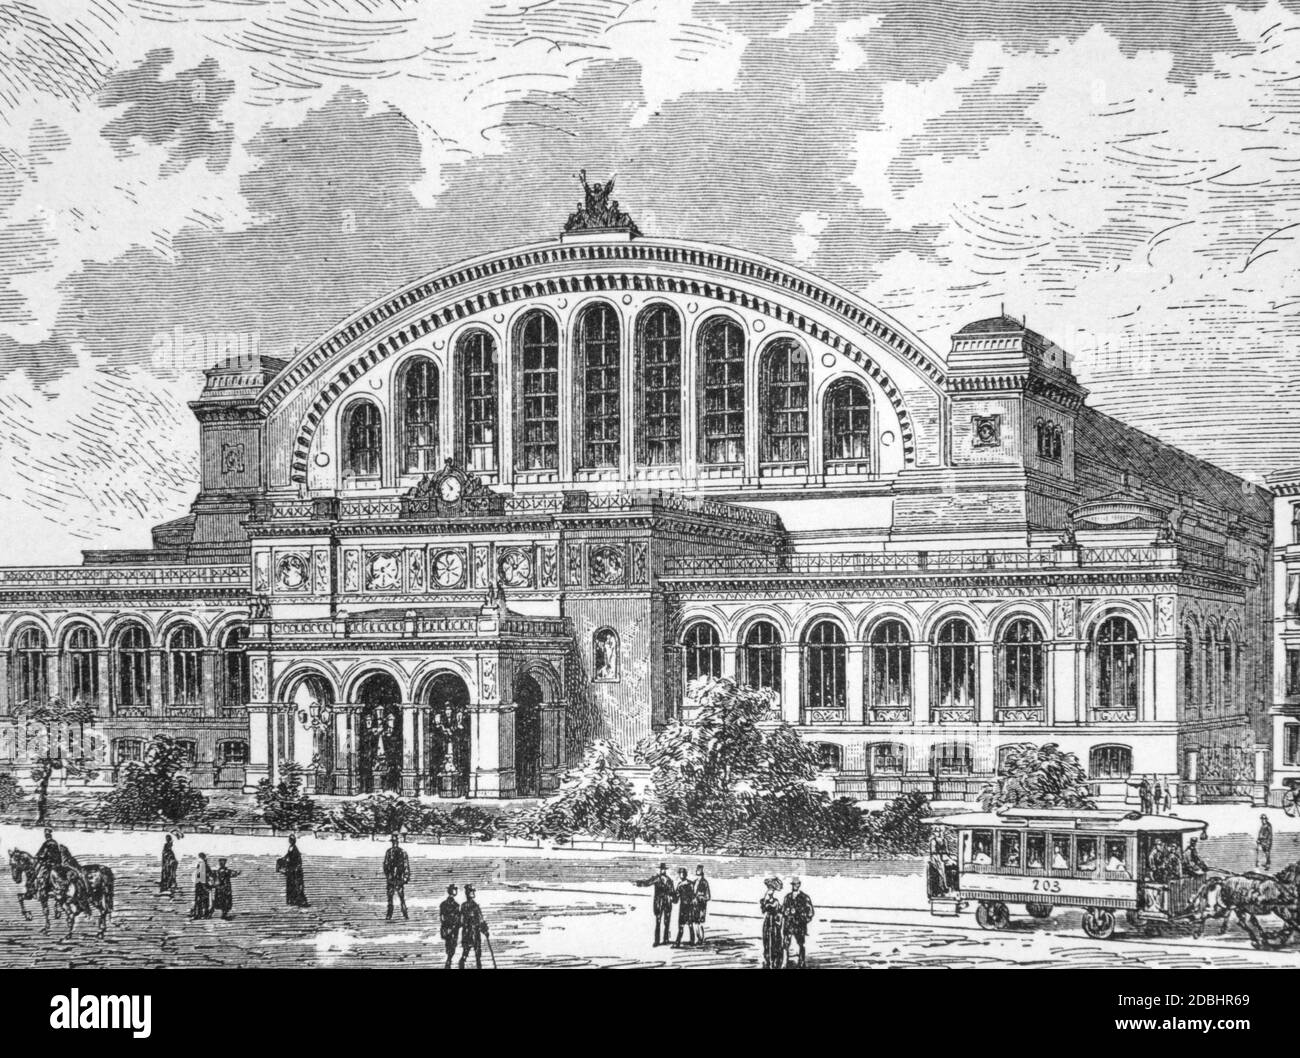 Disegno dell'Anhalter Bahnhof di Berlino. Fu costruito tra il 1875 e il 1880 su progetto di Franz Schwechten. Foto Stock